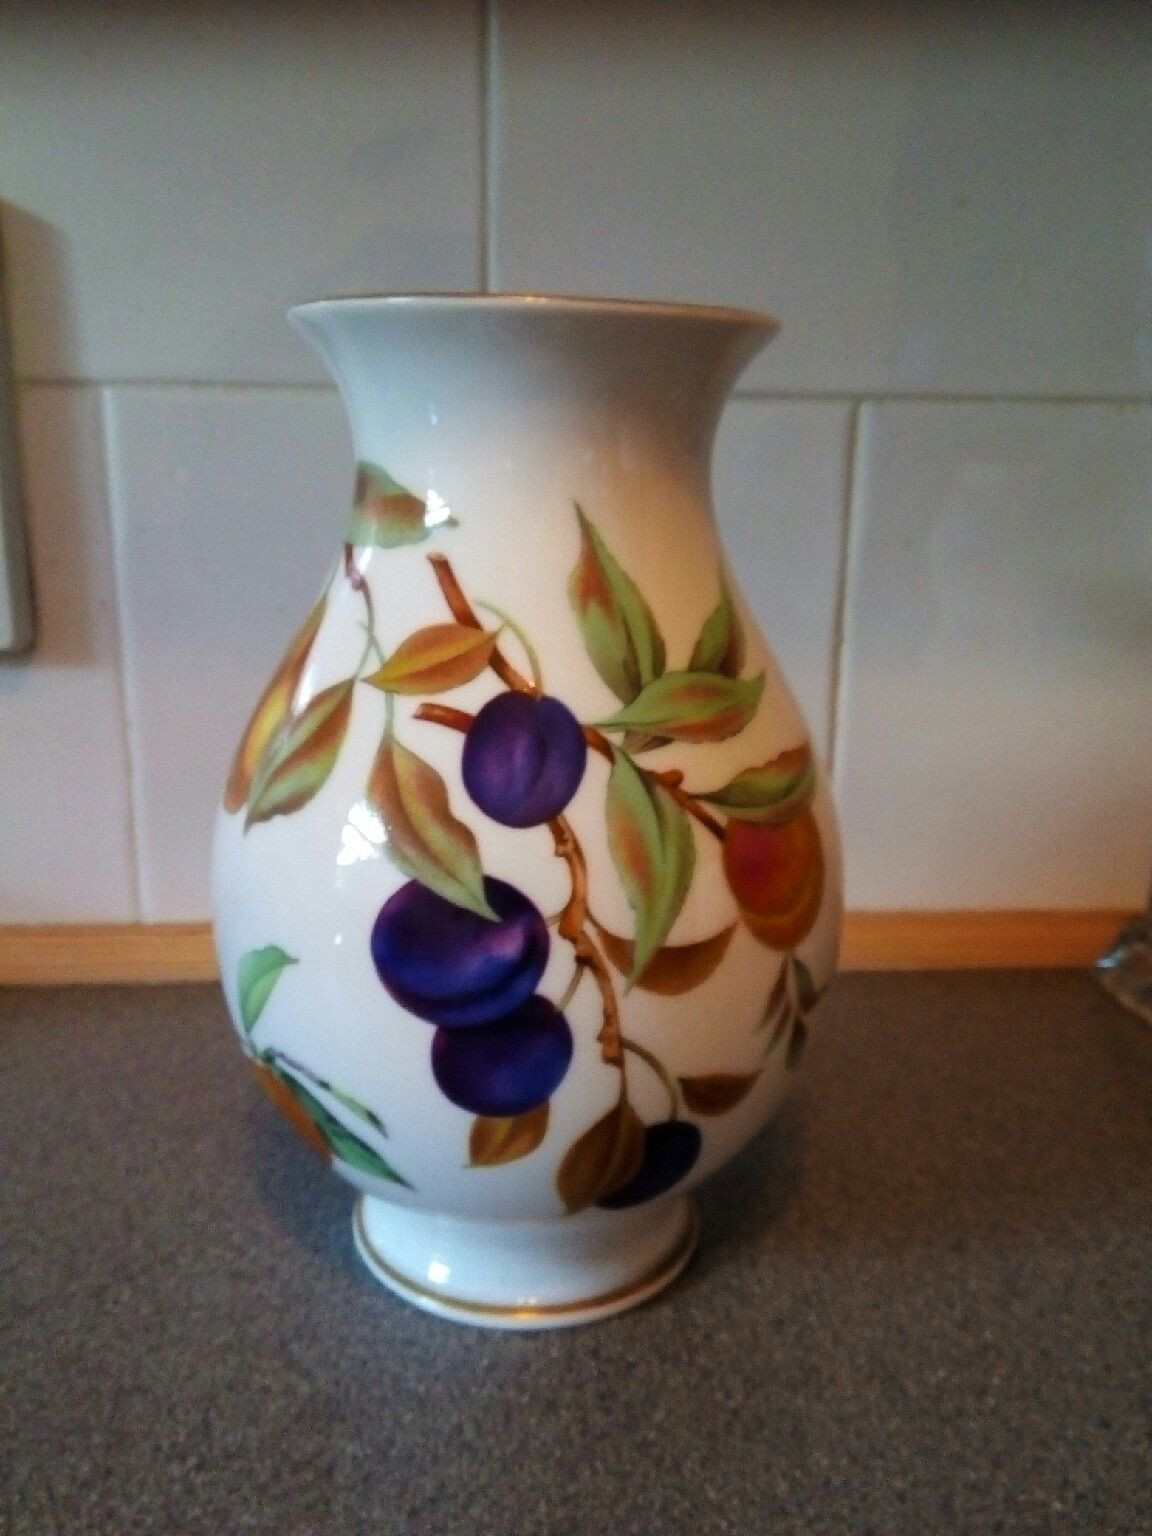 29 Spectacular Vw Beetle Vase 2024 free download vw beetle vase of https en shpock com i vmbnx0 p6vfsi0xn 2016 09 06t040449 pertaining to royal worcester vase